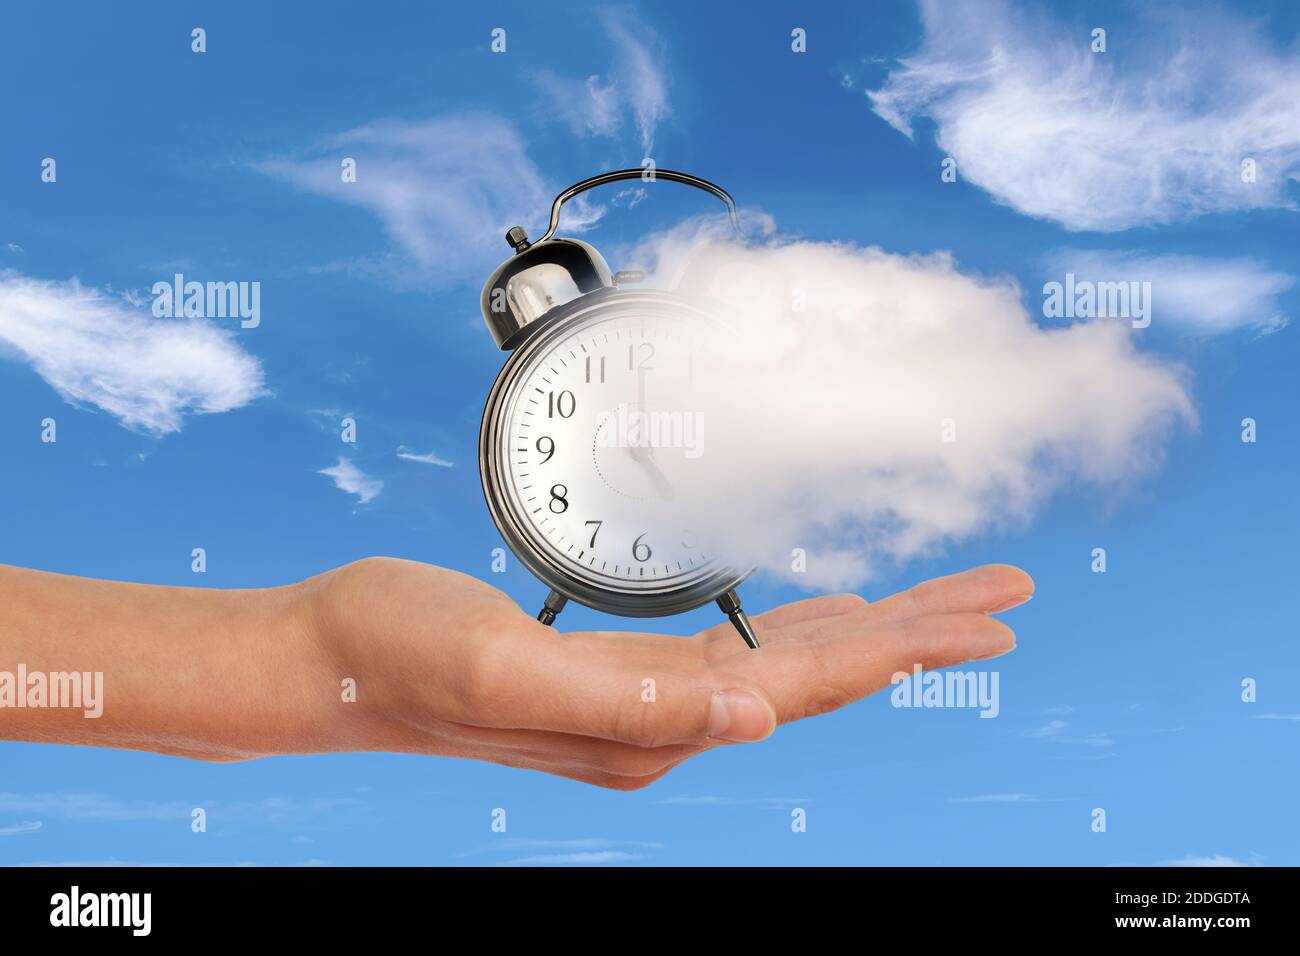 Mano sosteniendo un reloj disolviendo en una nube. El tiempo vuela, el concepto de gestión del tiempo. Collage surrealista. Foto de stock